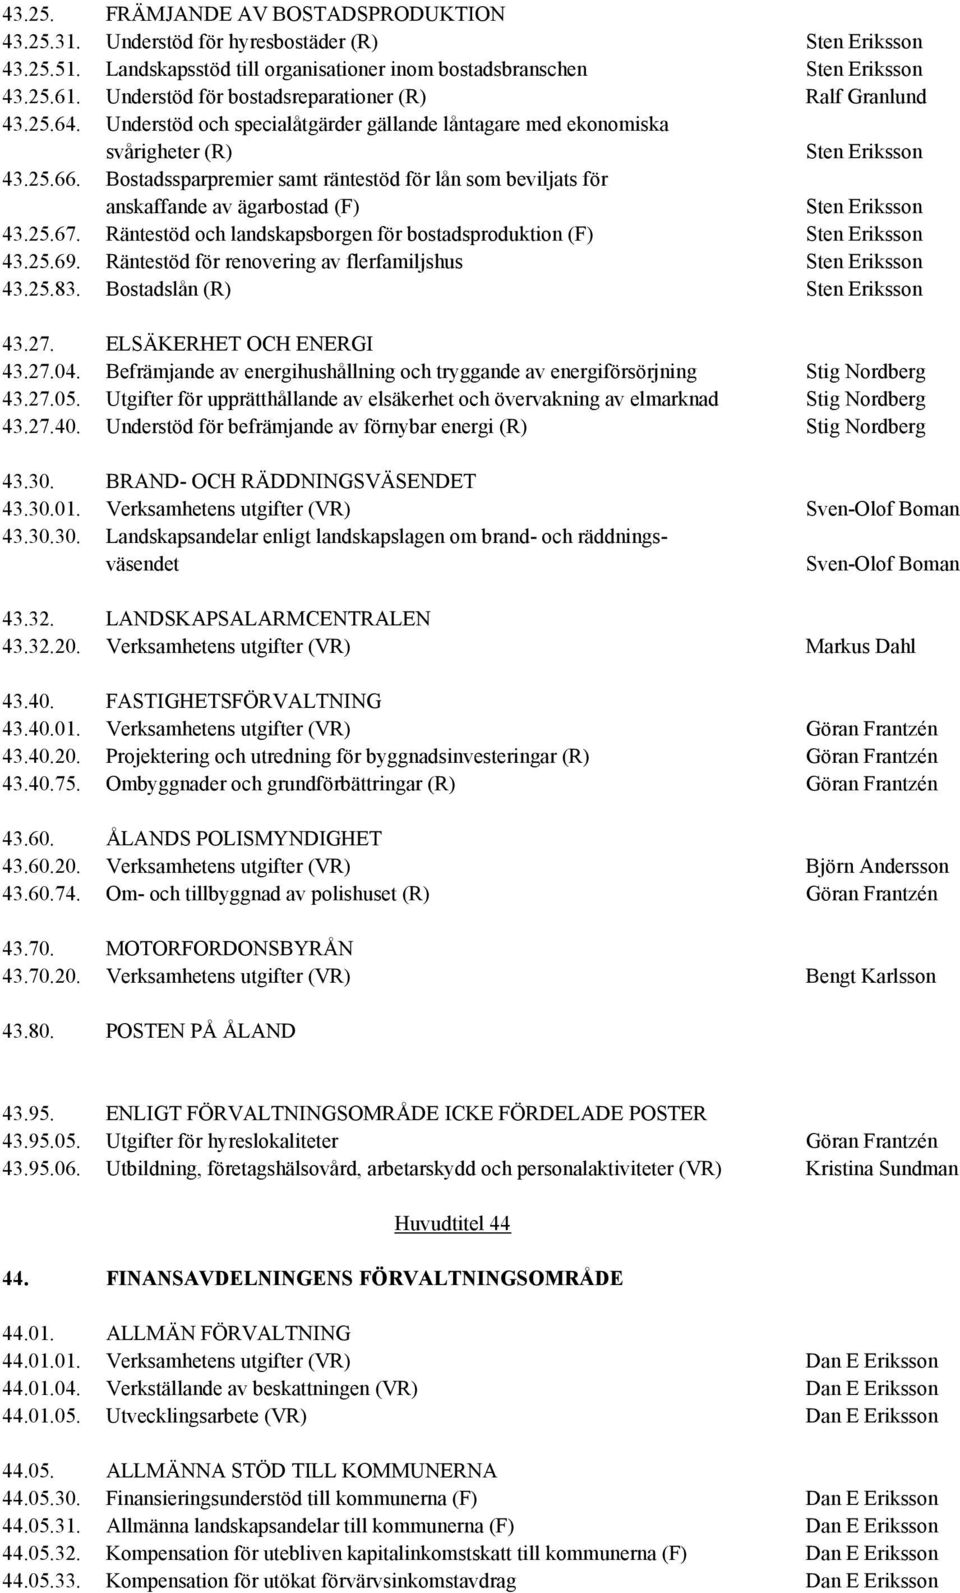 Bostadssparpremier samt räntestöd för lån som beviljats för anskaffande av ägarbostad (F) Sten Eriksson 43.25.67. Räntestöd och landskapsborgen för bostadsproduktion (F) Sten Eriksson 43.25.69.